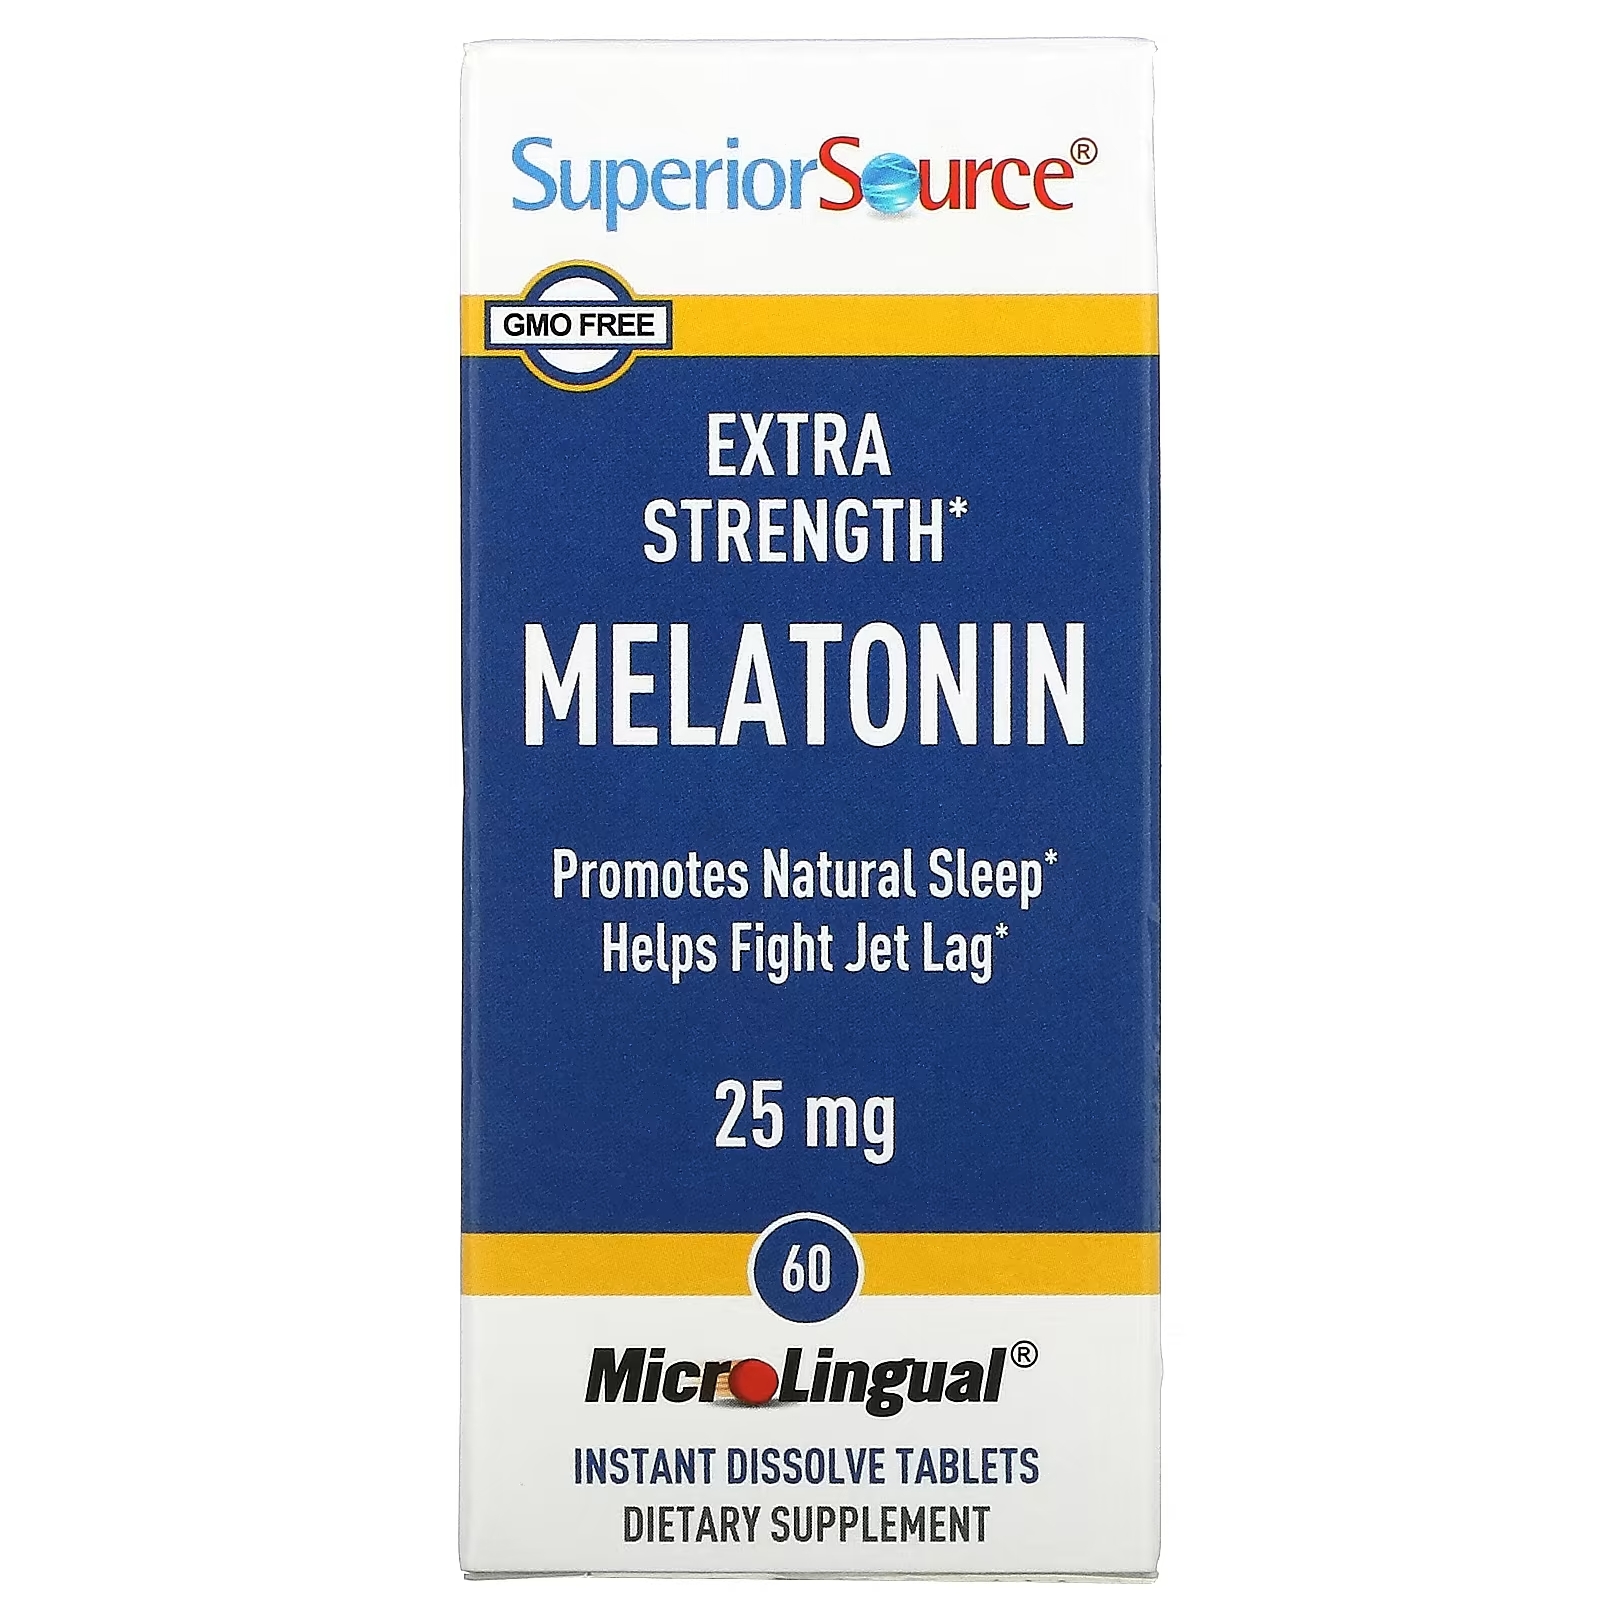 Superior Source Мелатонин повышенной силы действия 25 мг, 60 быстрорастворимых таблеток